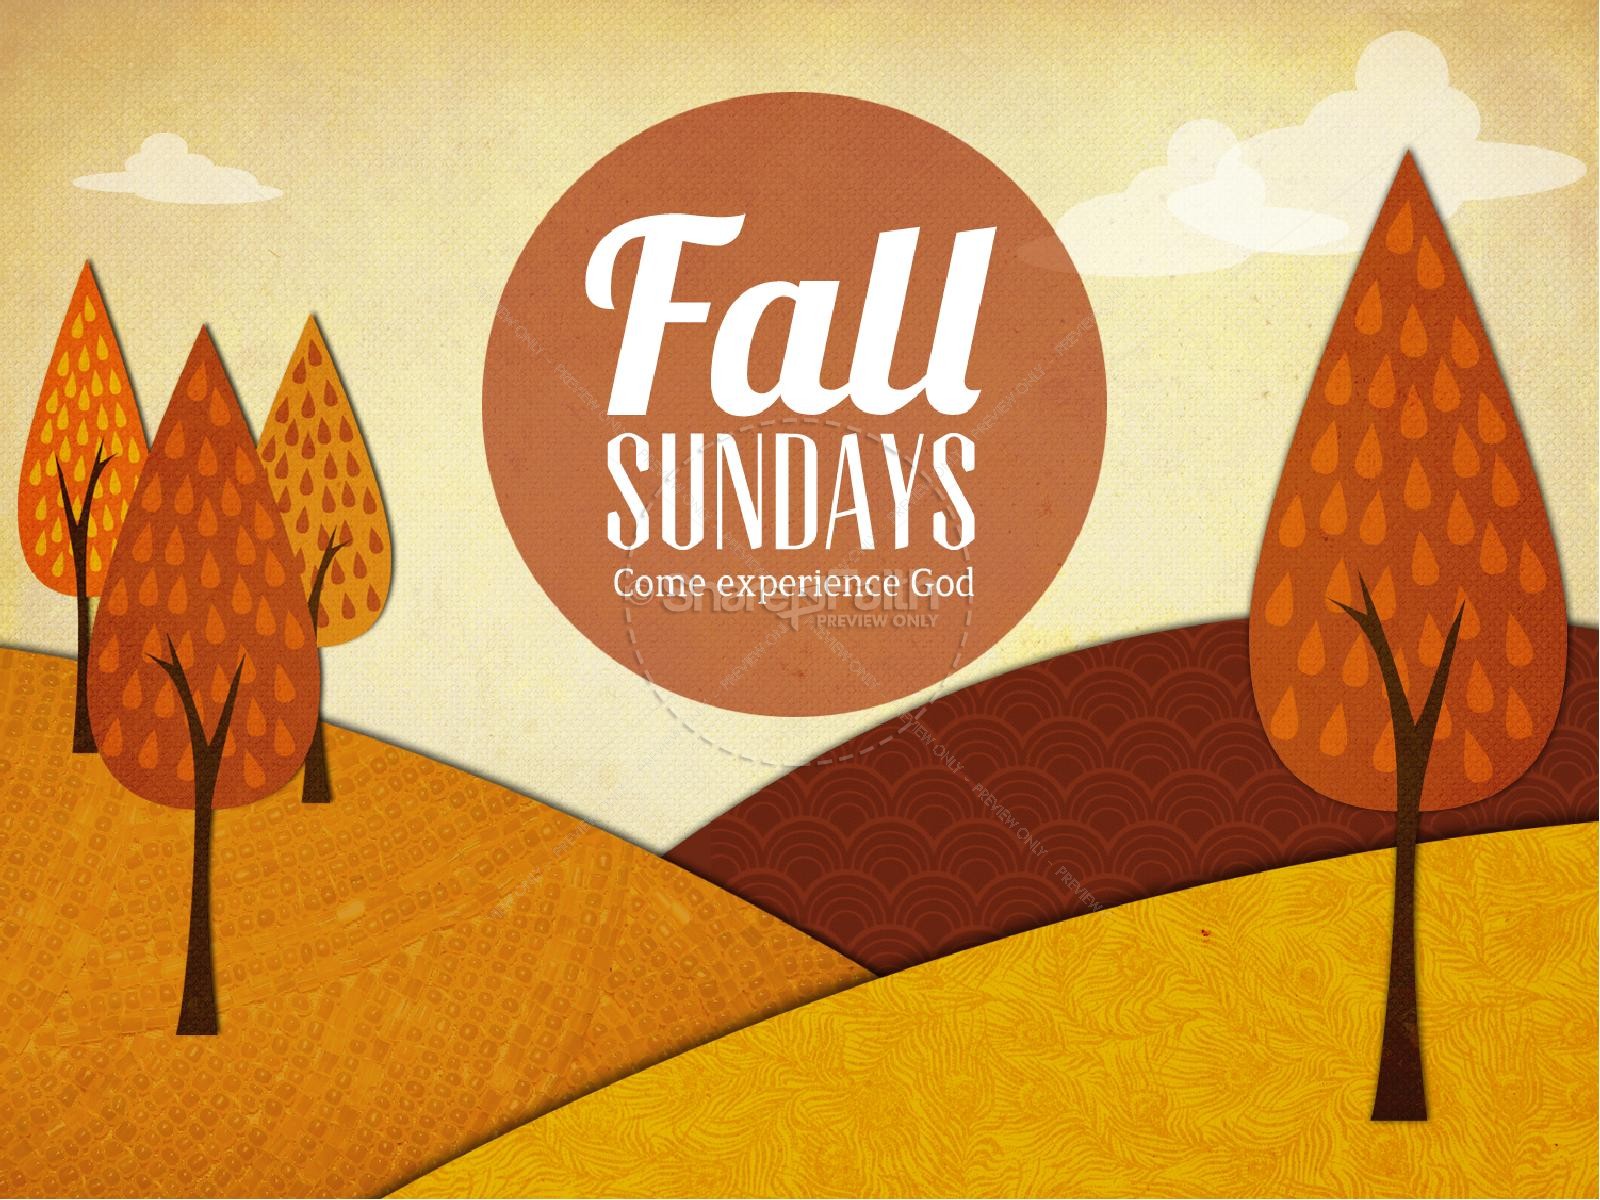 Fall Sundays Church PowerPoint Design